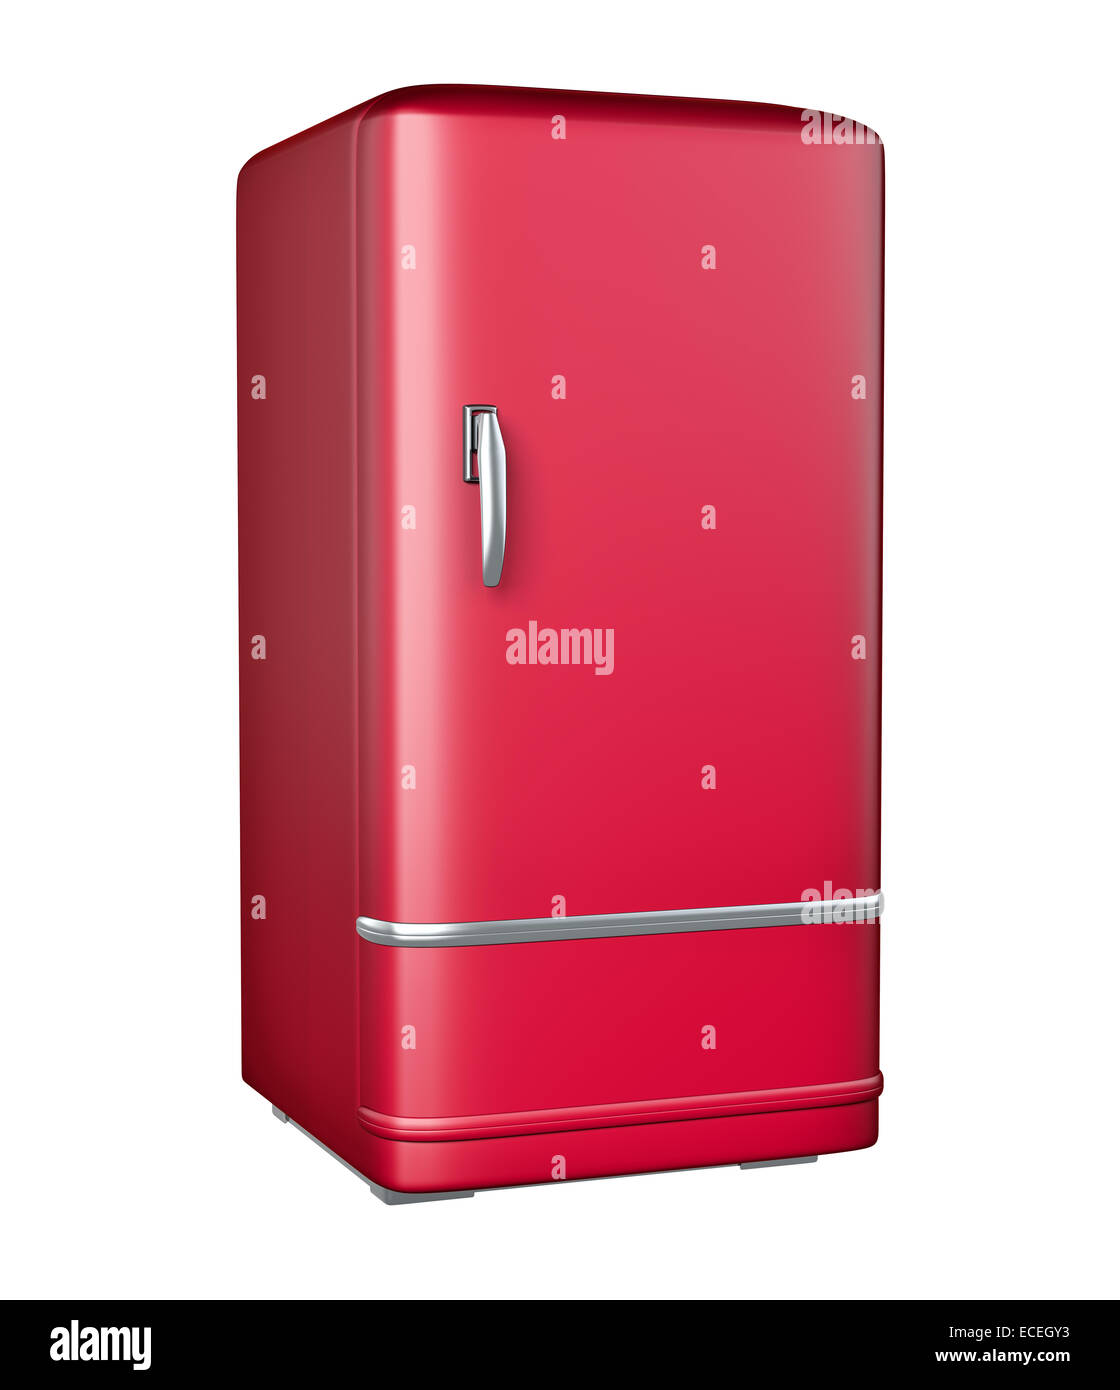 Retro refrigerator - isolated on white background Stock Photo